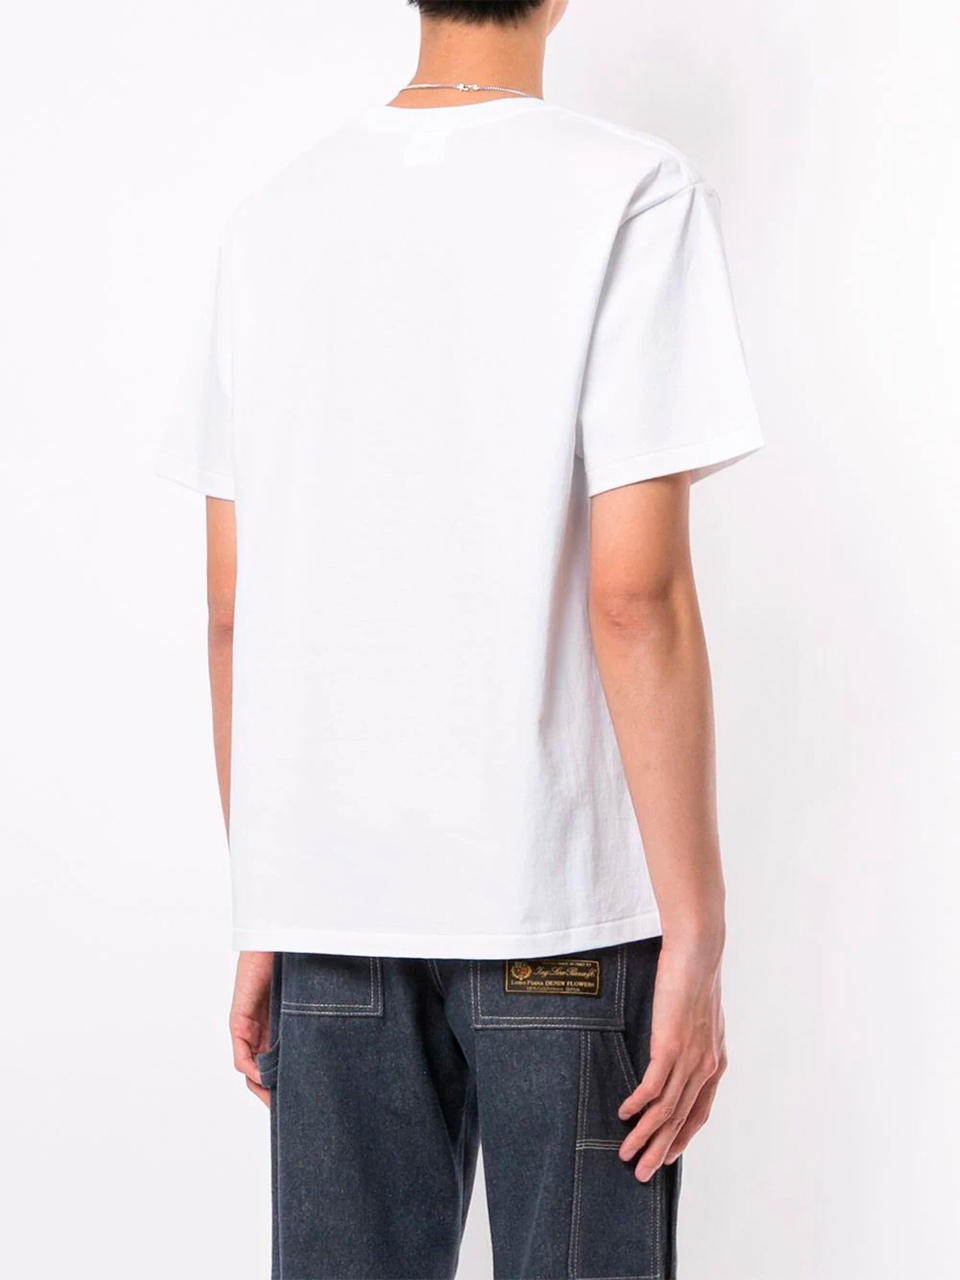 Imagem de: Camiseta BAPE Branca com Logo Grande Camo Cinza